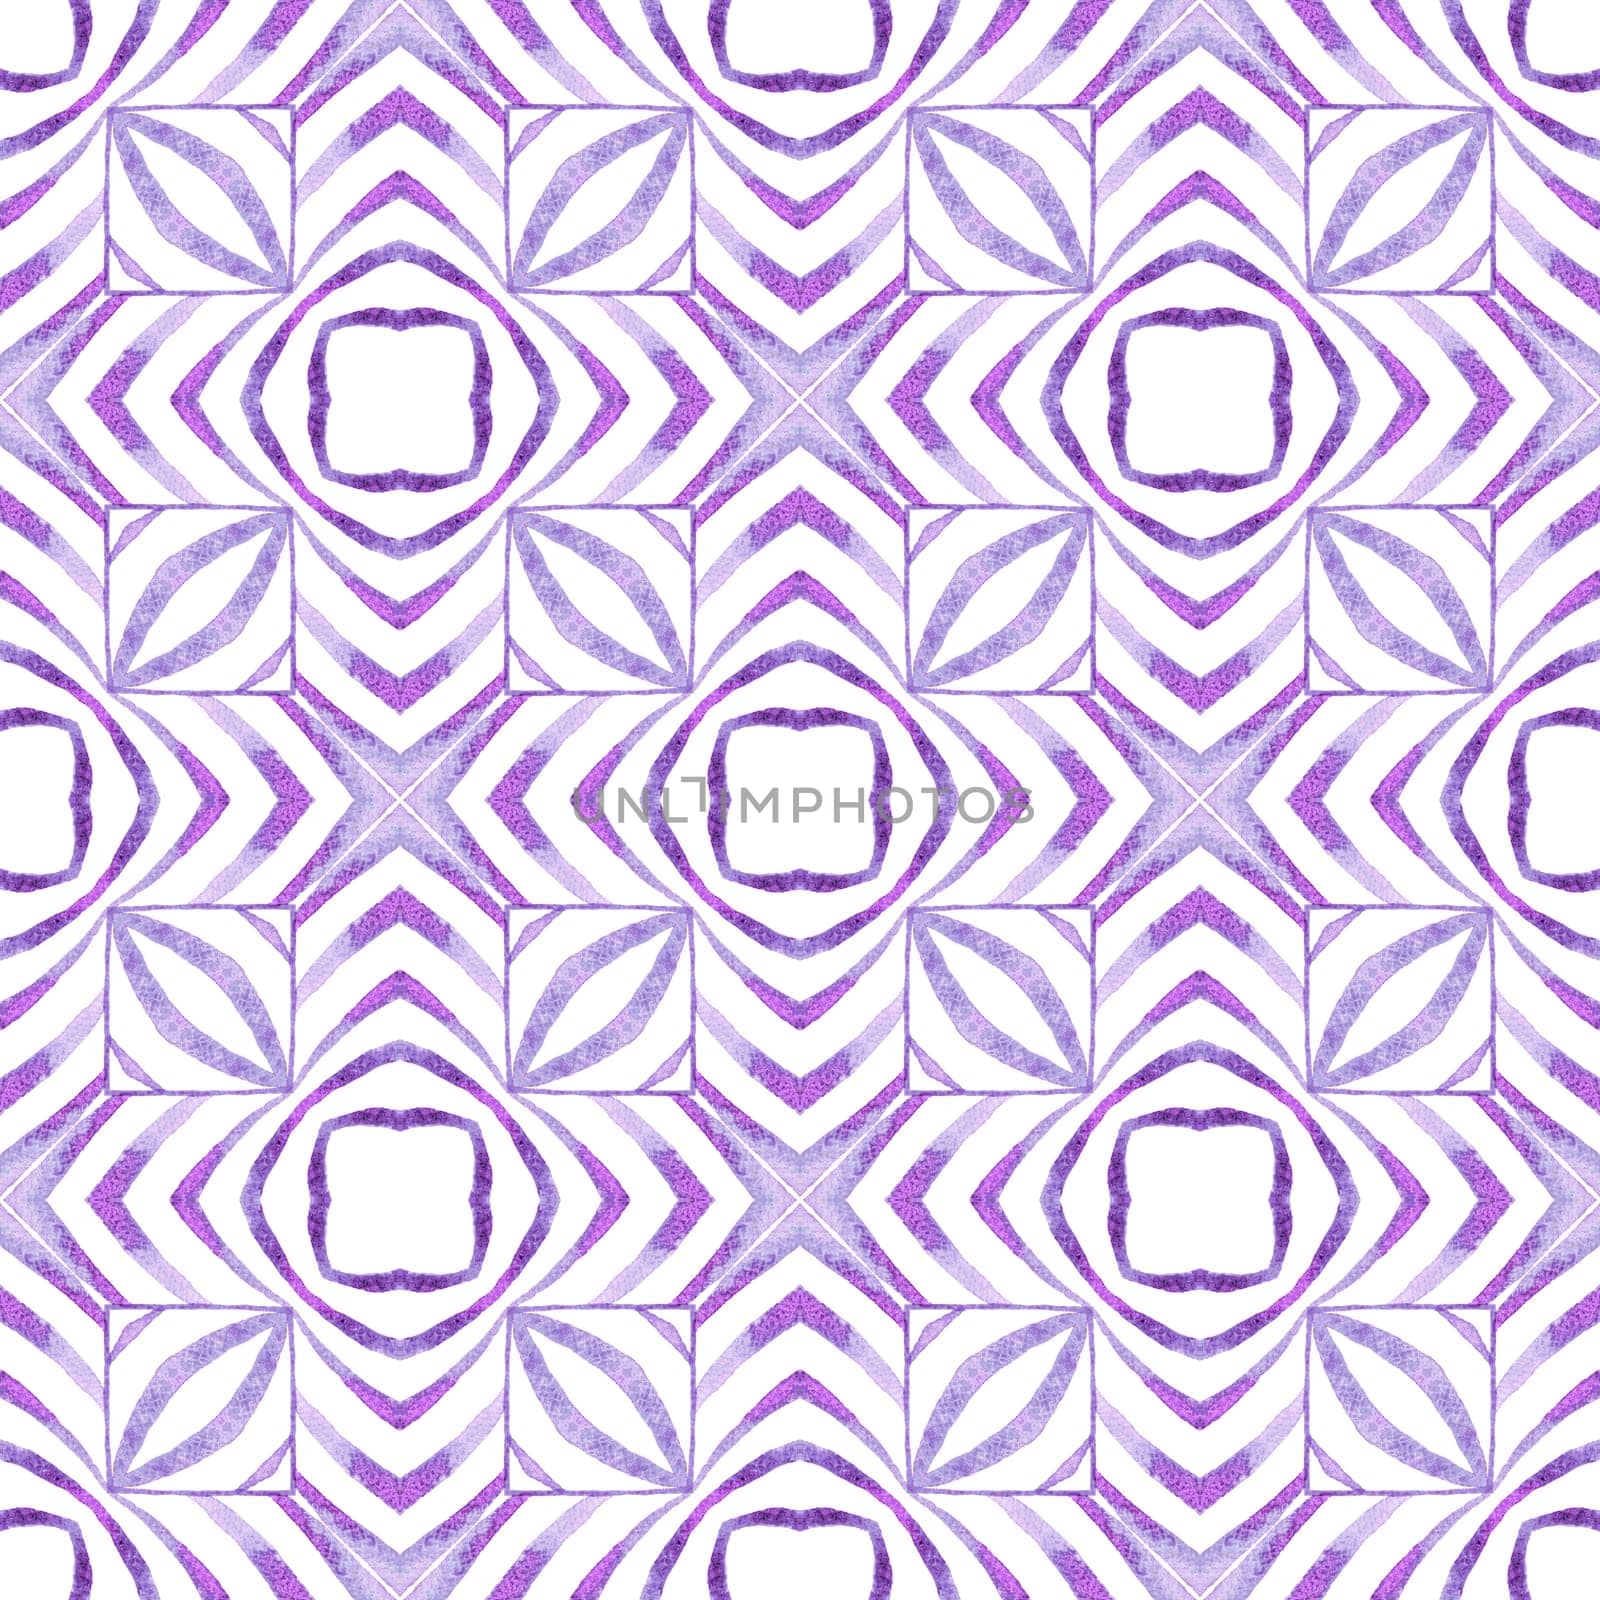 Striped hand drawn design. Purple fair boho chic by beginagain